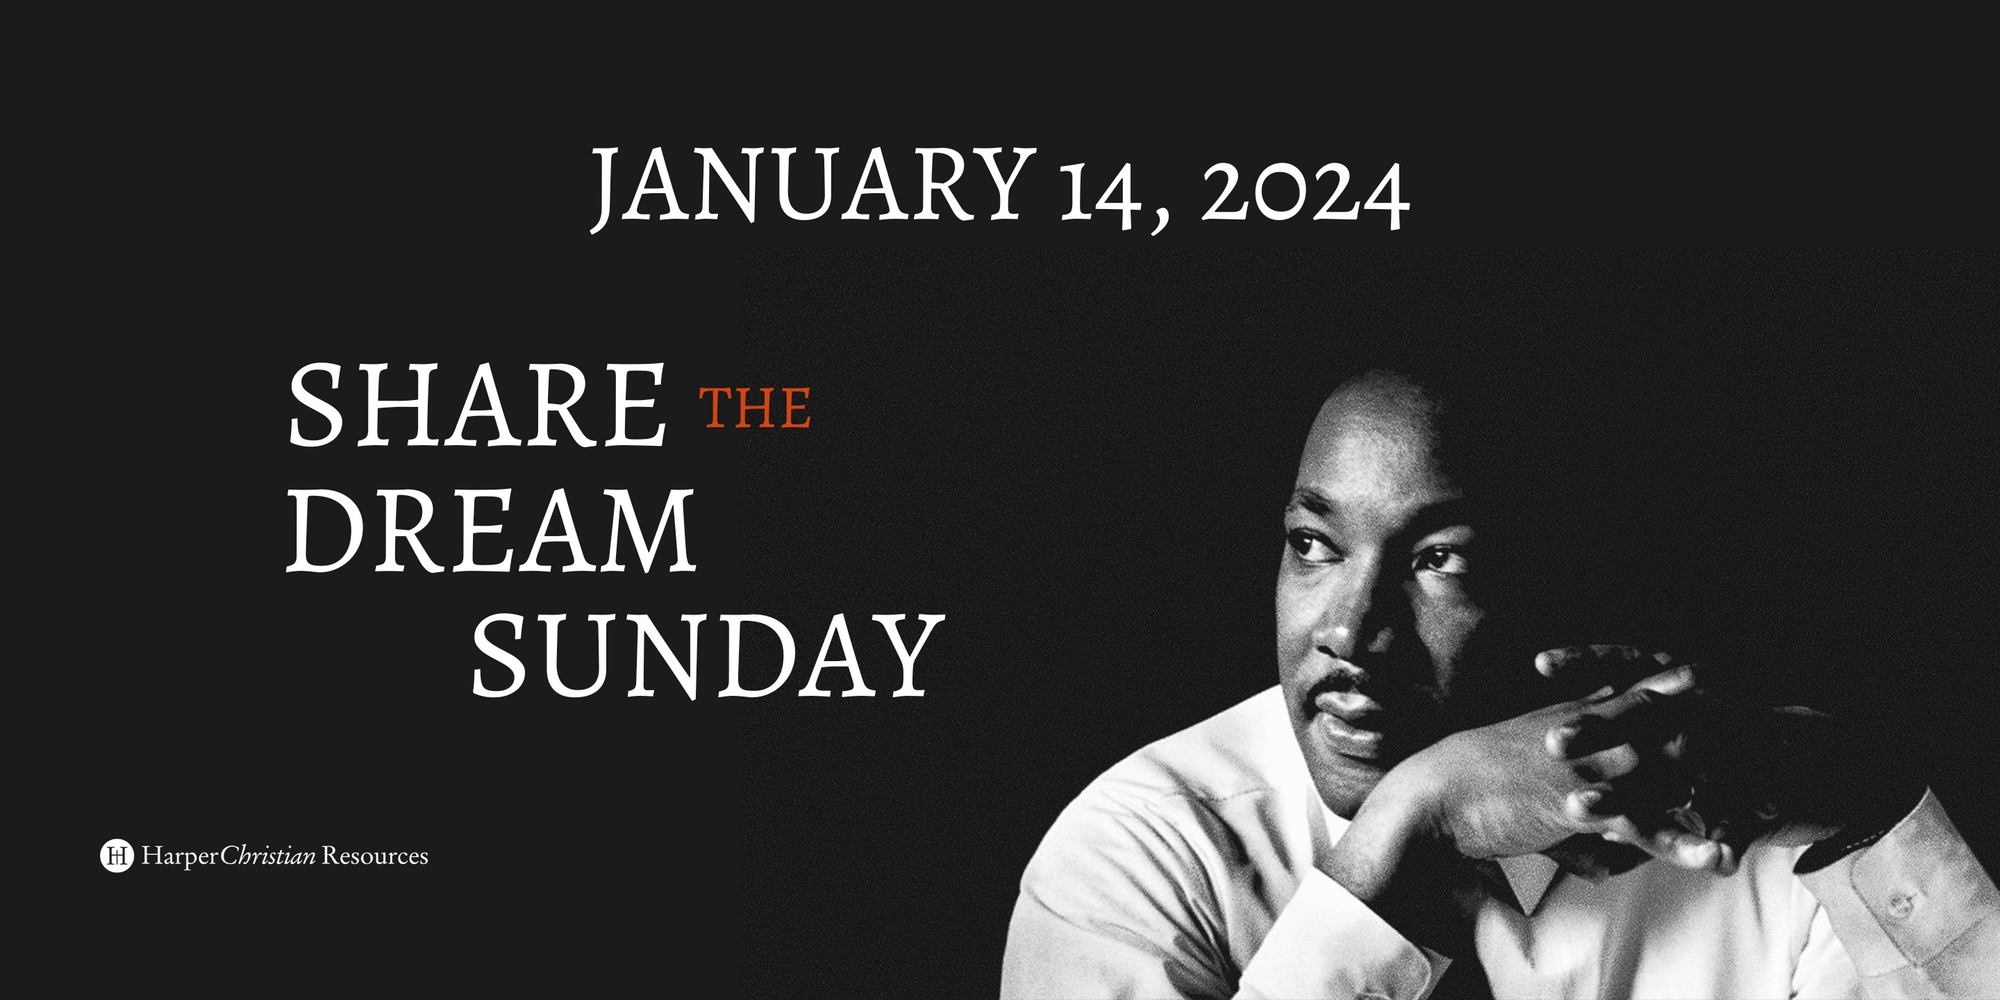 Share the Dream Sunday - January 14, 2024